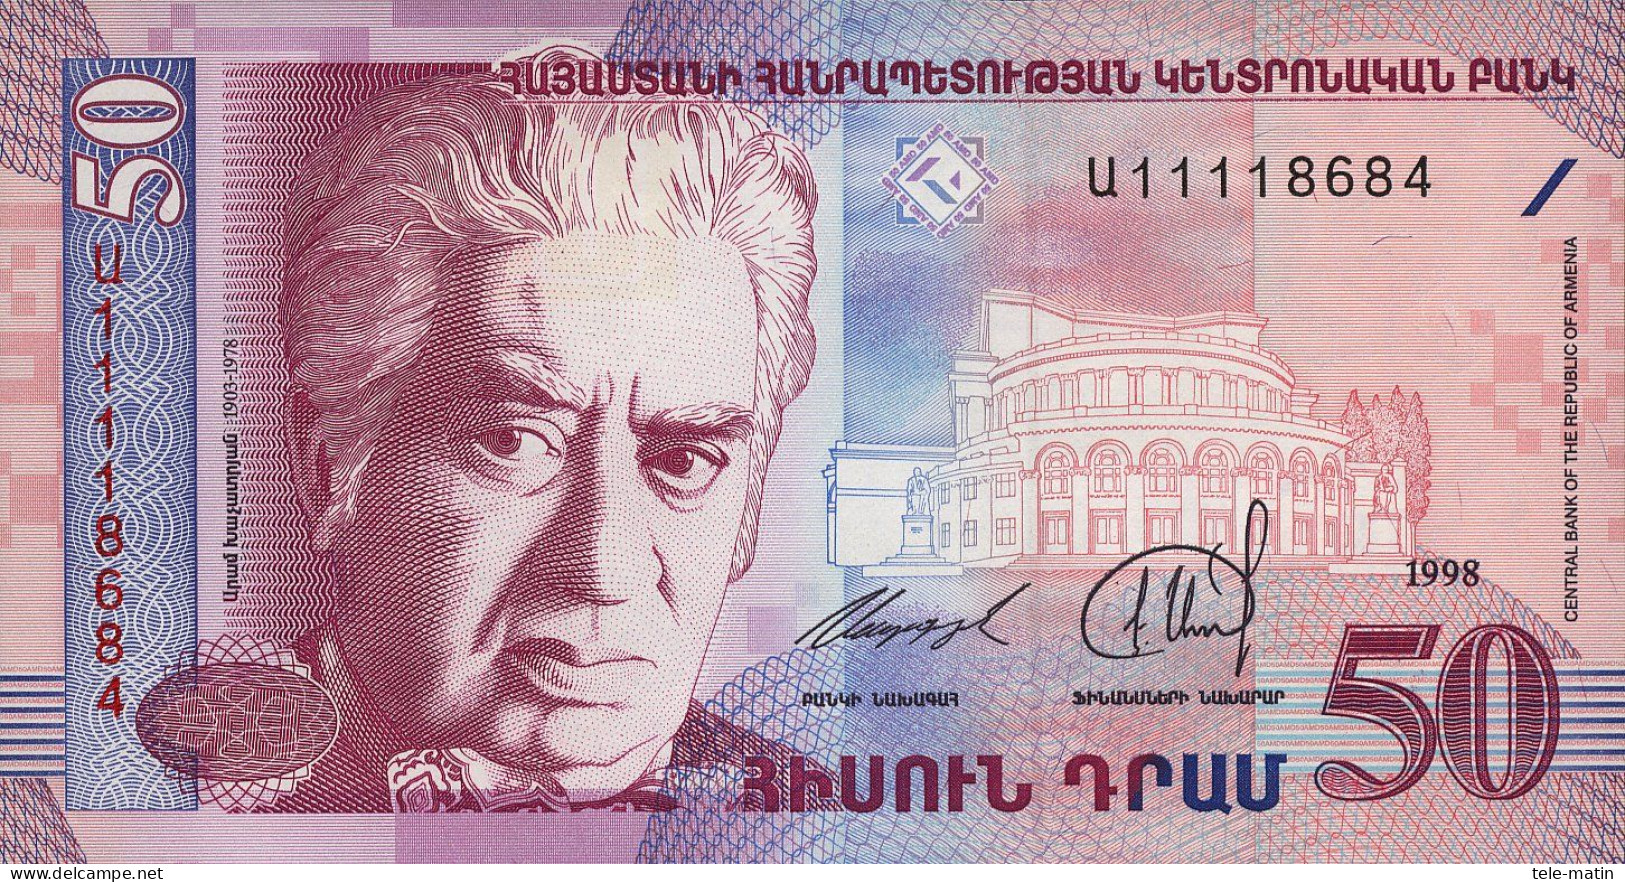 2 Billets De L'Arménie De 10 Et 50 Dram (1993 Et 1998) - Armenië